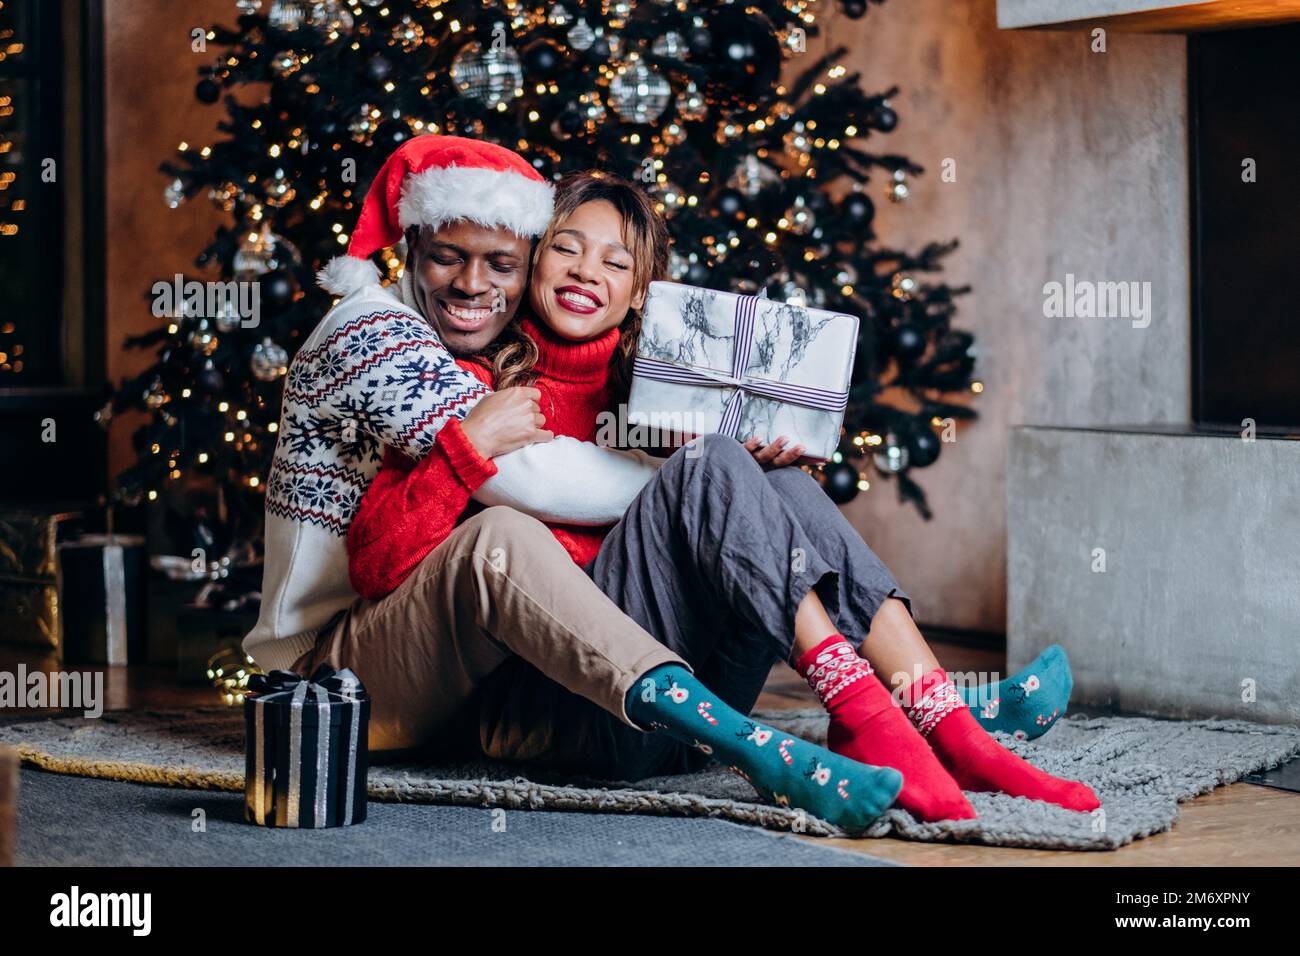 Eine glückliche Frau und ein schwarzer Mann in festlichen Pullover, die sich umarmen, Geschenke halten und auf dem Teppich neben dem Weihnachtsbaum mit Ornamenten und Girlande sitzen Stockfoto